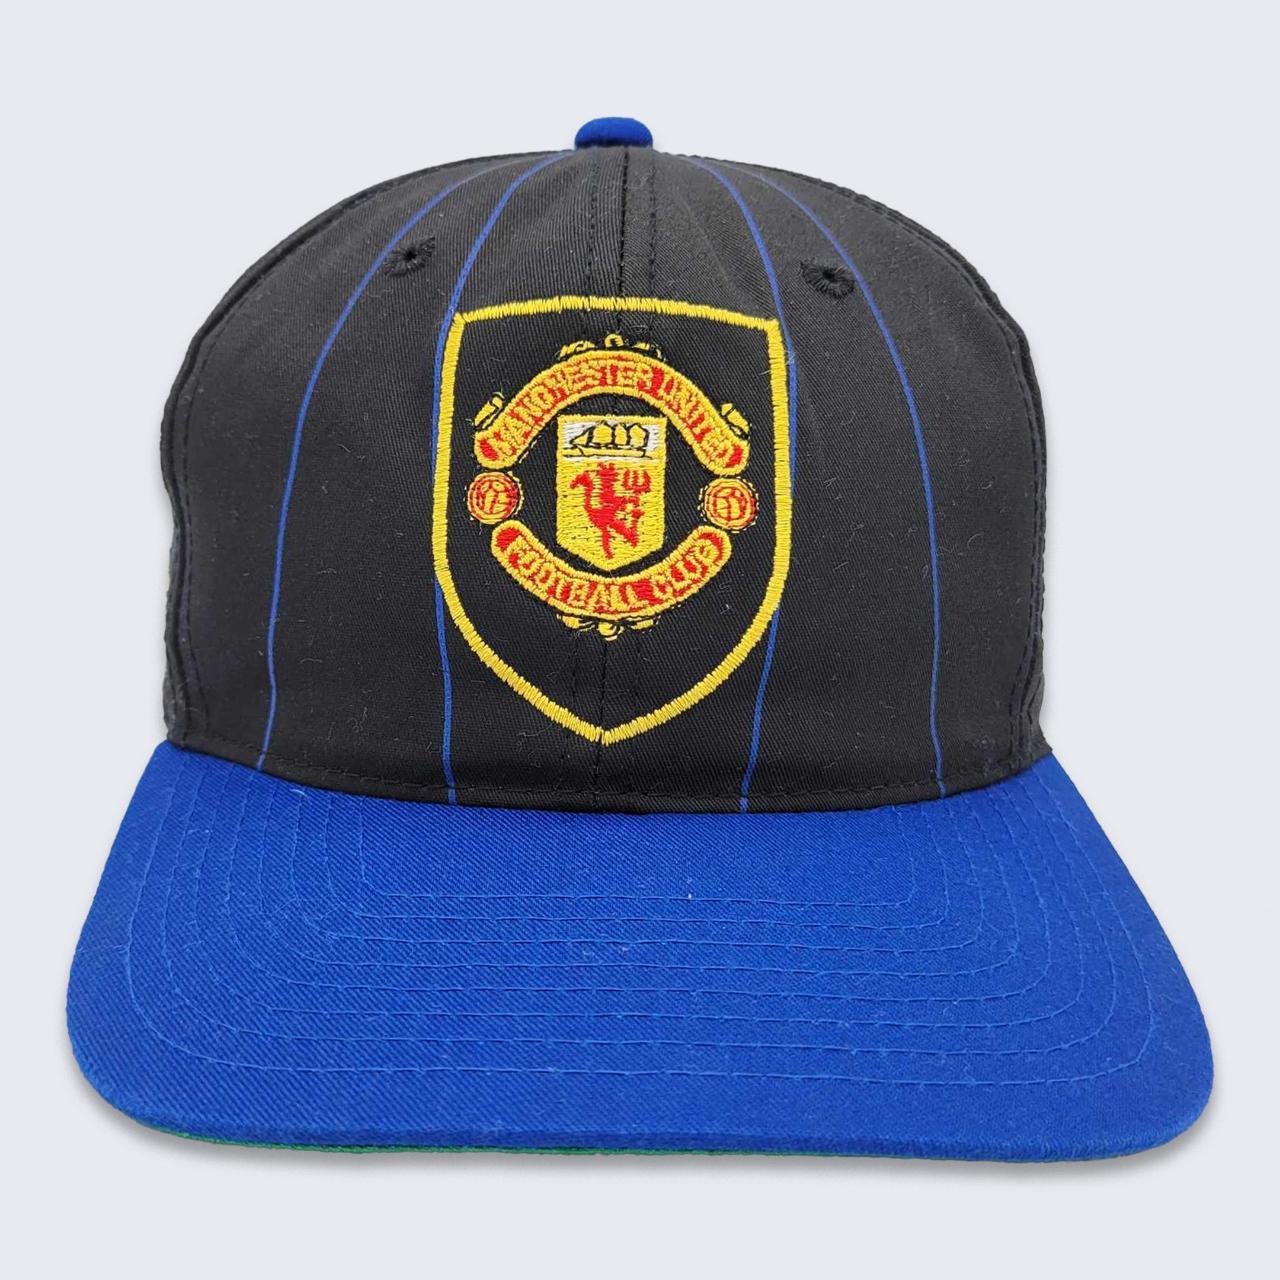 90s UMBRO Manchester United cap帽子 - キャップ